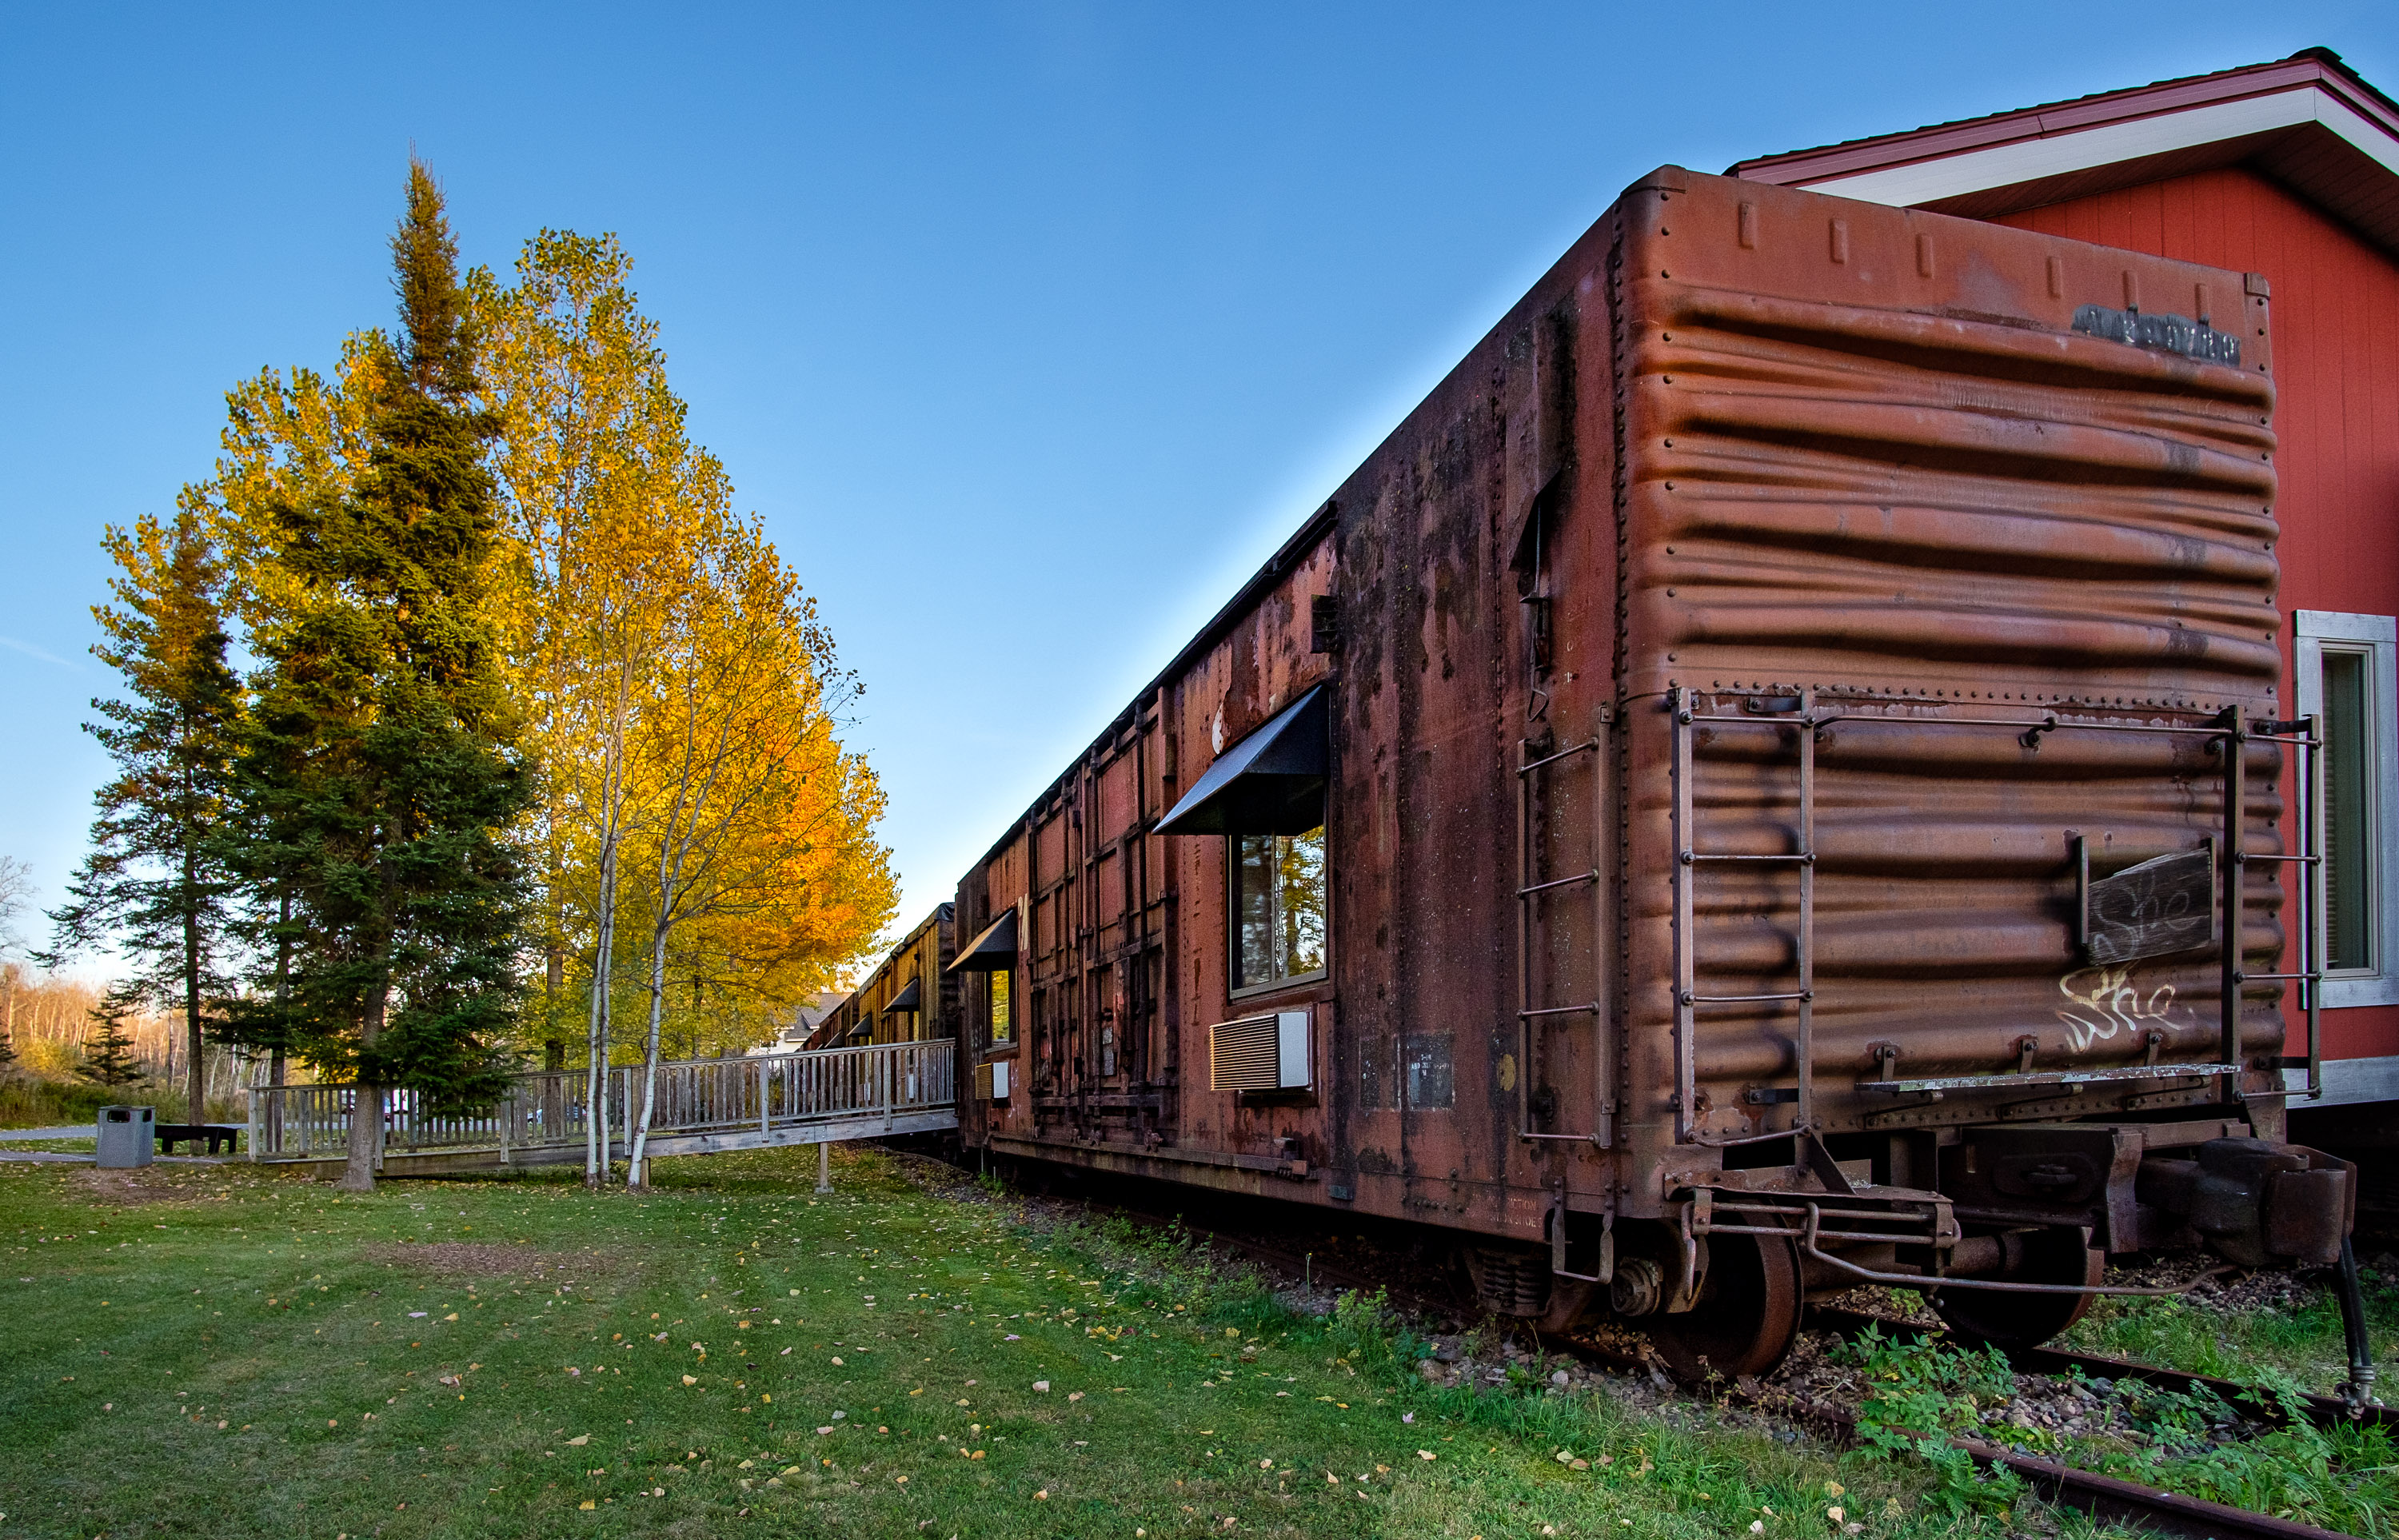 Northern Rail Traincar Inn